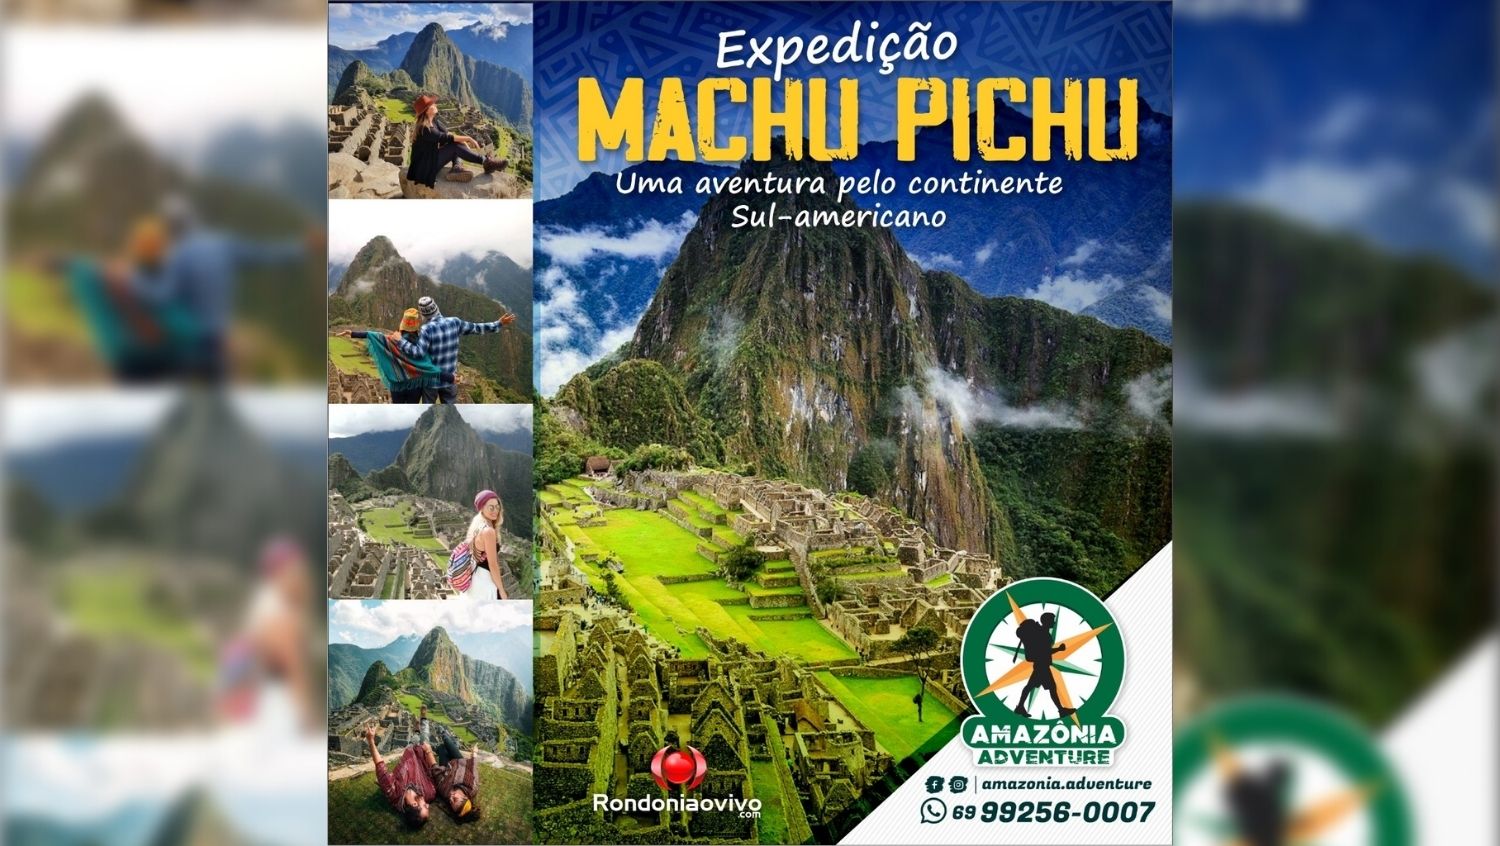 AMAZÔNIA ADVENTURE: Porto Velho e Machu Picchu no feriado de Carnaval